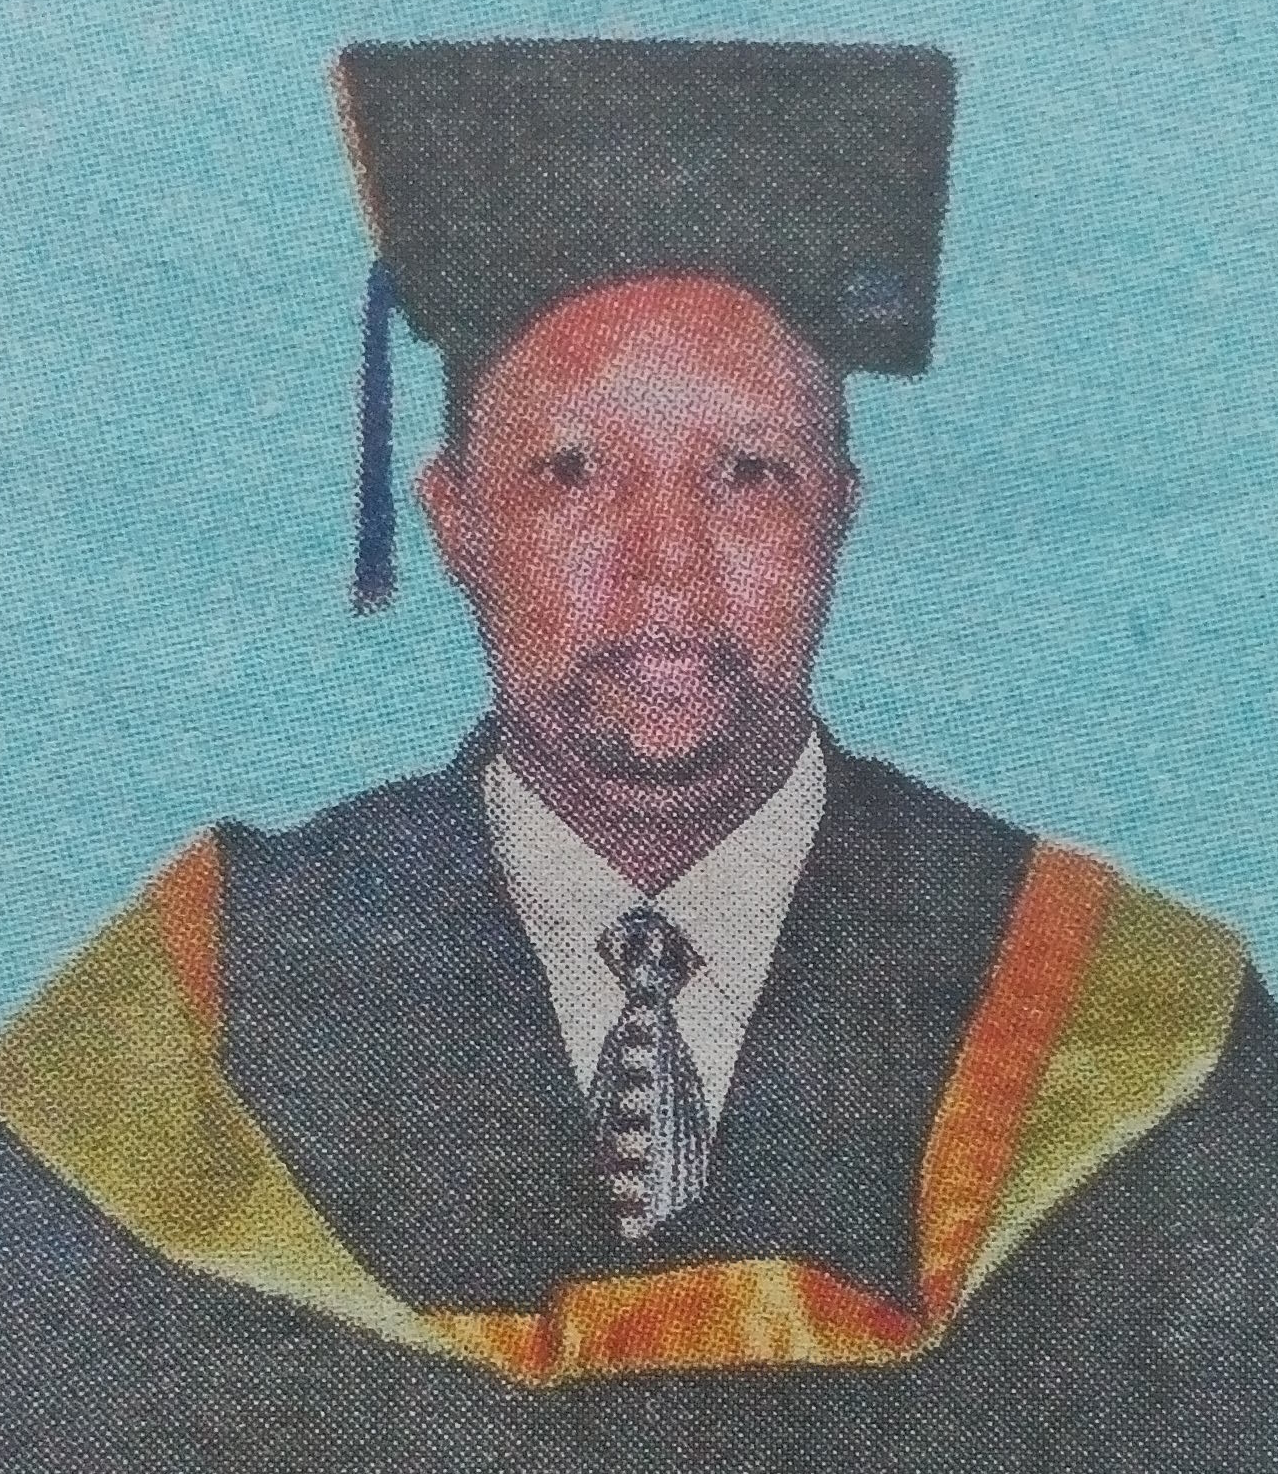 Obituary Image of Robert Gacheru Kinyanjui (Uncle Bob)